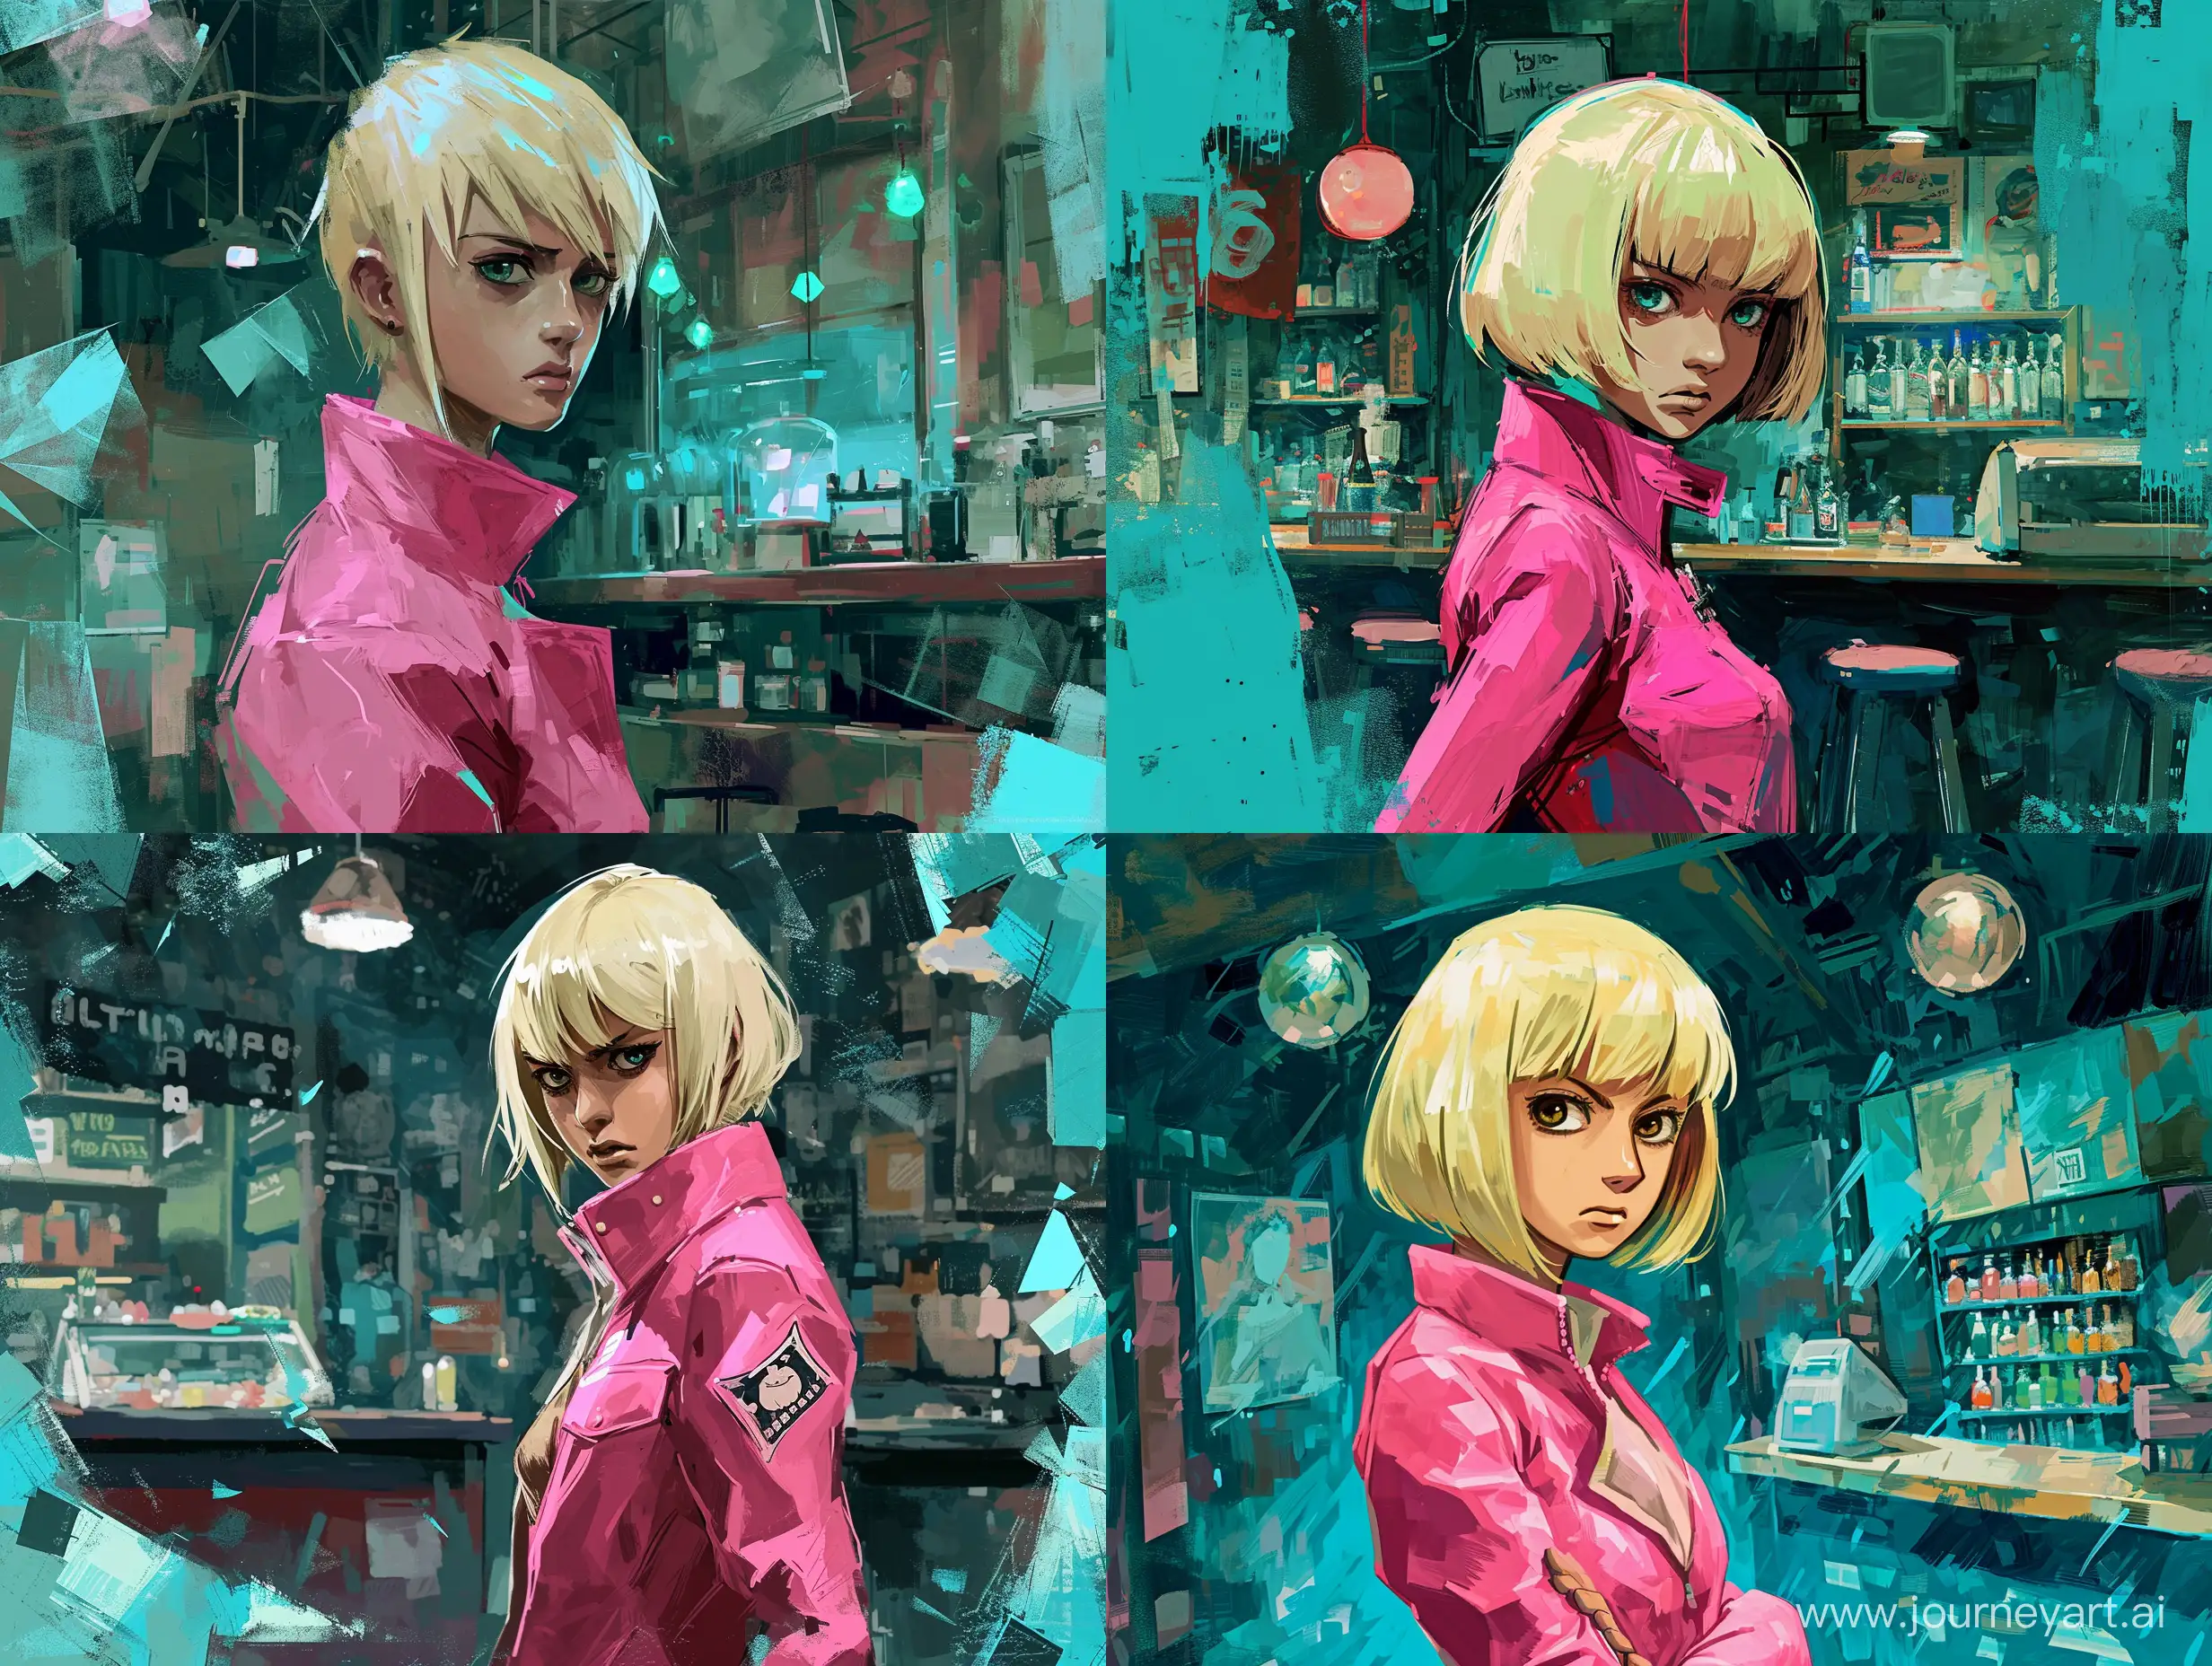 Kira-Yoshikage-Jojo-Blonde-Hair-Pink-Jacket-Night-Shop